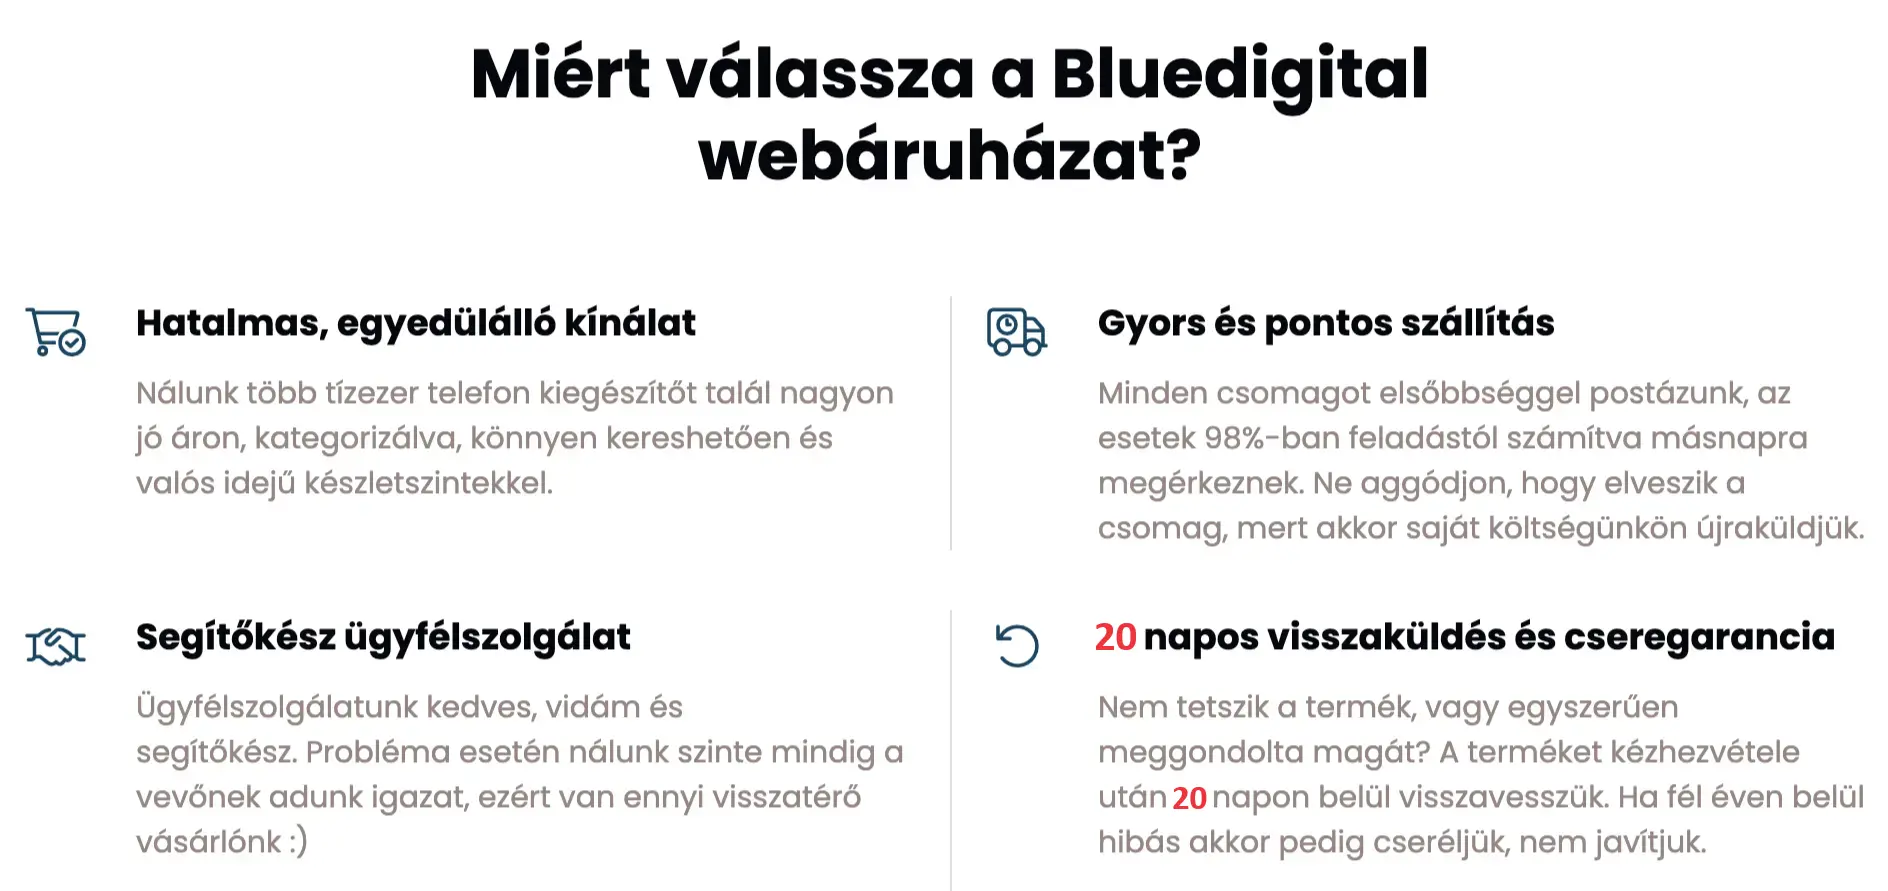 Miért válassza a Bluedigital webáruházat?